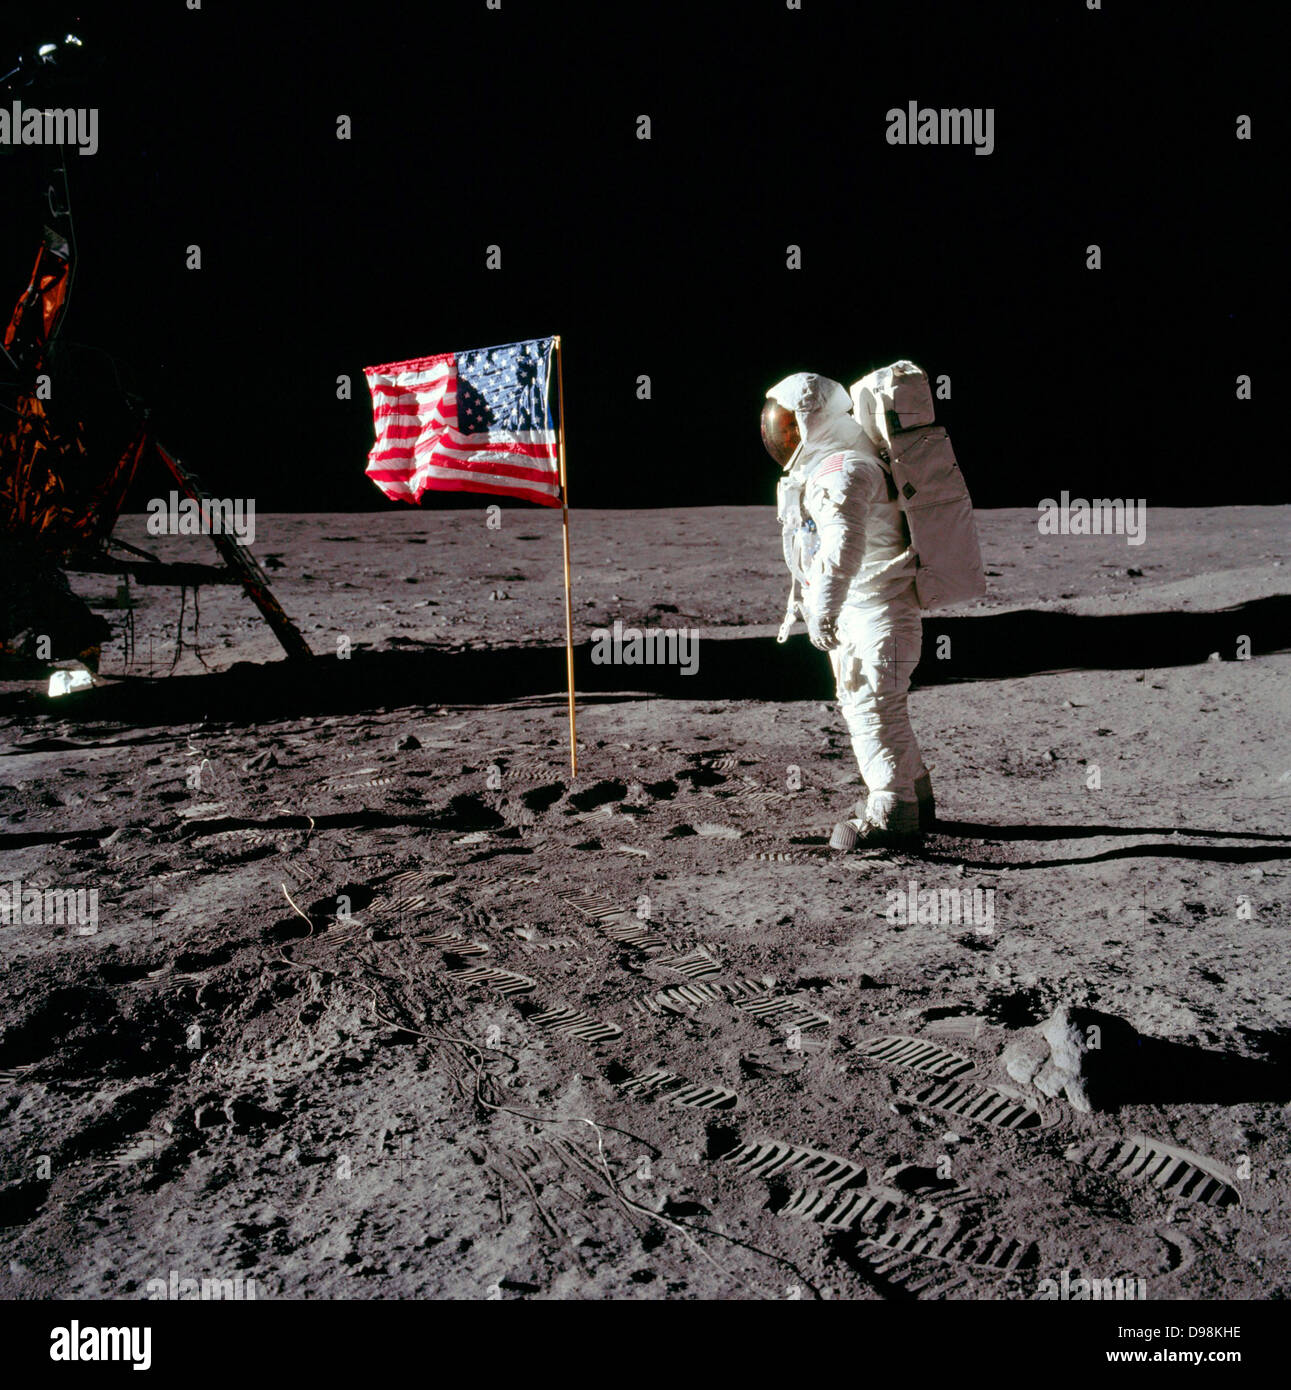 Astronauta Neil A. Armstrong, Apollo ll comandante della missione, in apparecchiature modulari gruppo di immagazzinamento (MESA) del modulo lunare " Eagle " sulla prima storica extravehicular attività (EVA) sulla superficie lunare. Astronauta Edwin E. Aldrin Jr ha preso la fotografia con una Hasselblad 70mm Fotocamera. La maggior parte delle foto dalla missione Apollo 11 show di Buzz Aldrin. Questo è uno dei pochi che mostra Neil Armstrong 20 Luglio 1969 Foto Stock